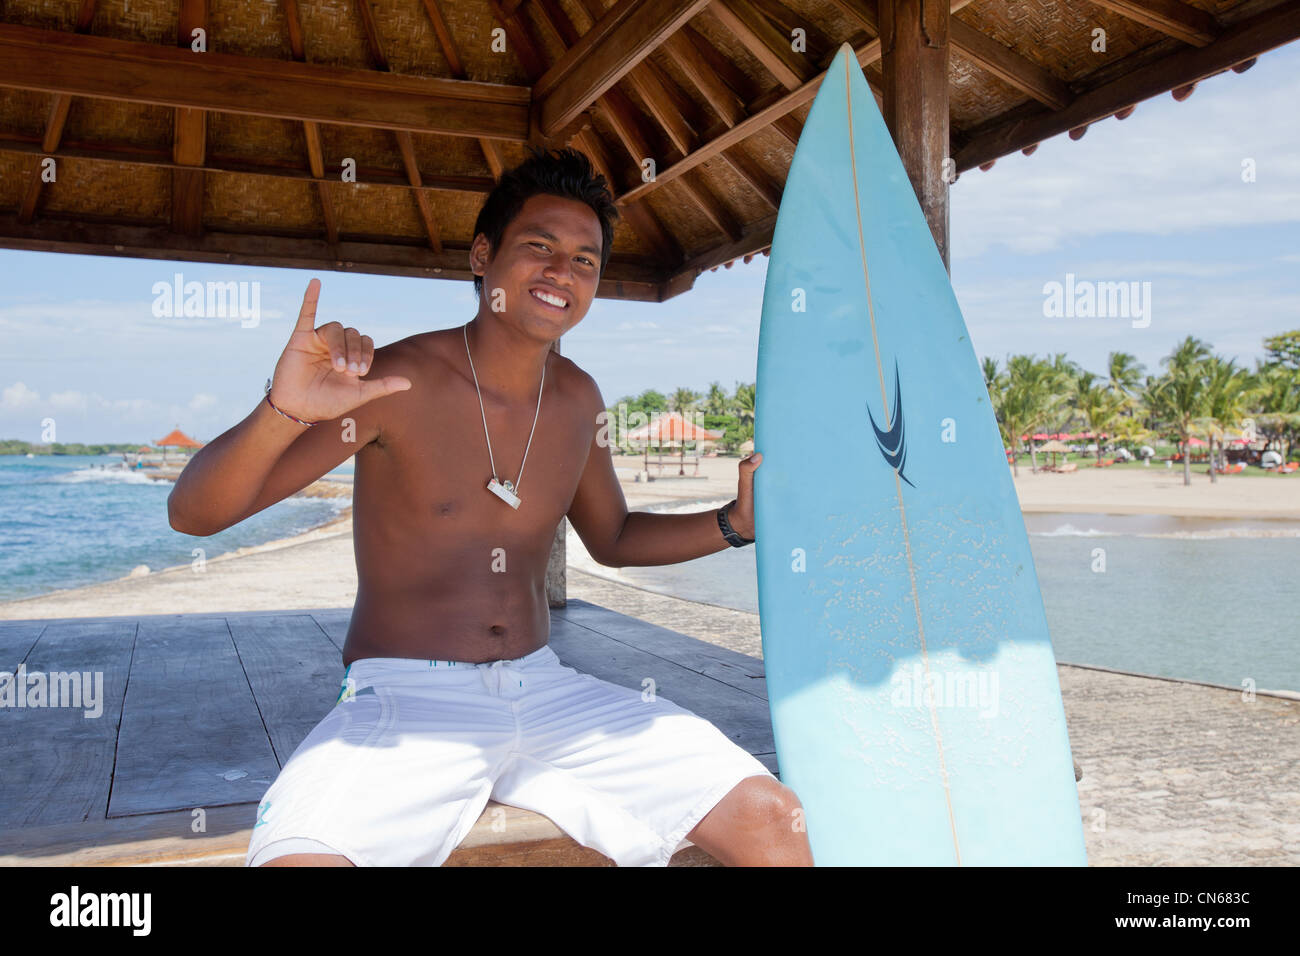 Surfer Bali Indonesia Foto Stock